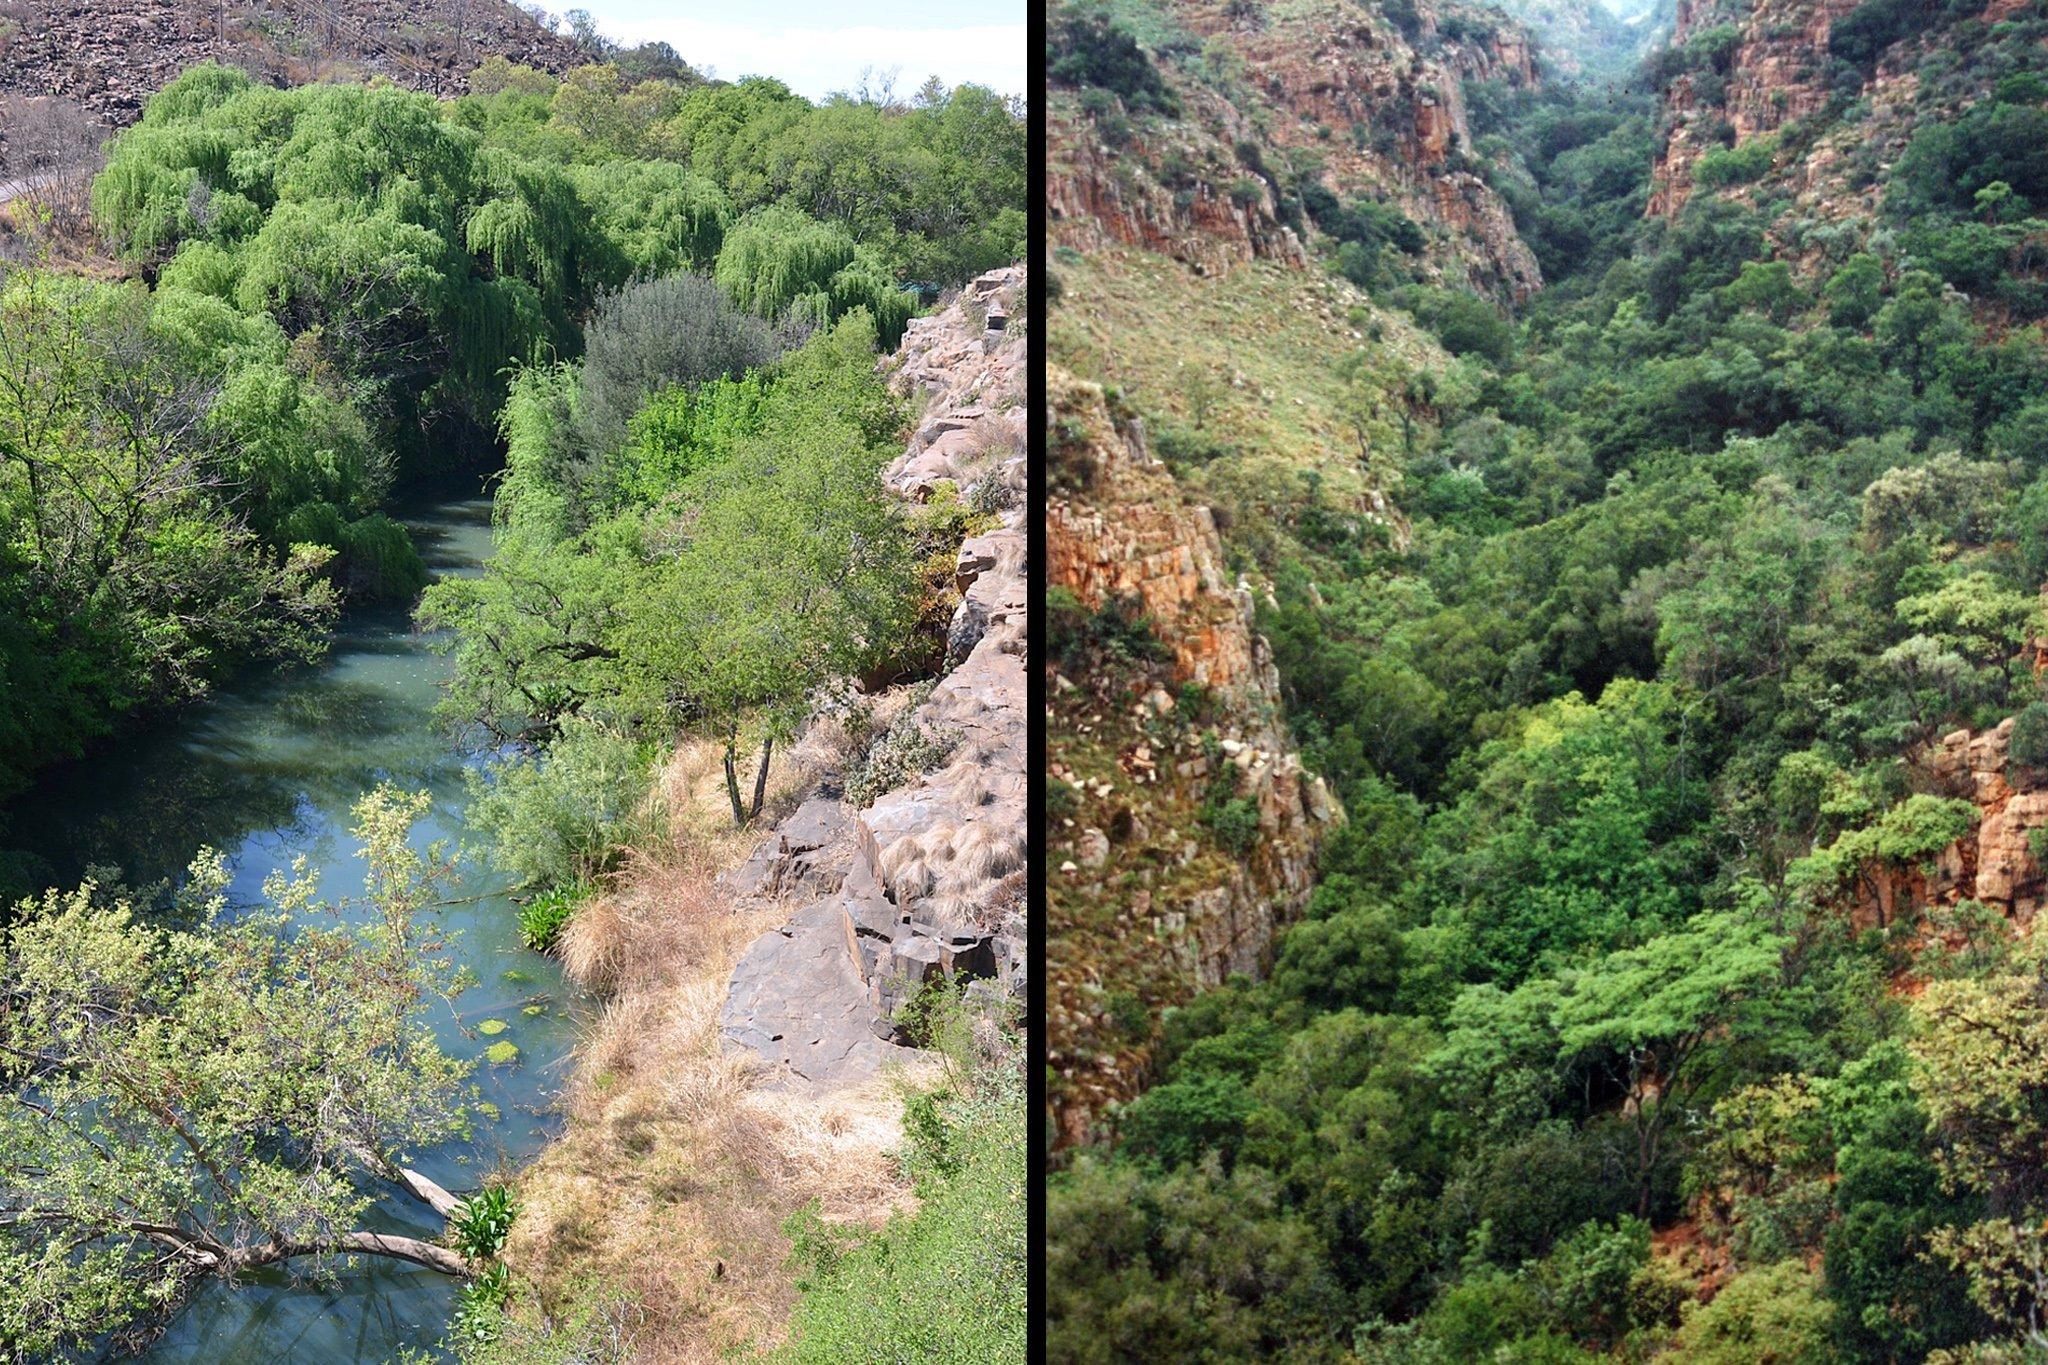 Das linke der beiden Fotos zeigt einen Fluss, der mit kleinen Bäumen bestanden ist, auf beiden Seiten flankiert von Felsen. Rechts ist eine steile, tiefe Schlucht zu sehen, in der sich weiter unten viele Bäume finden.